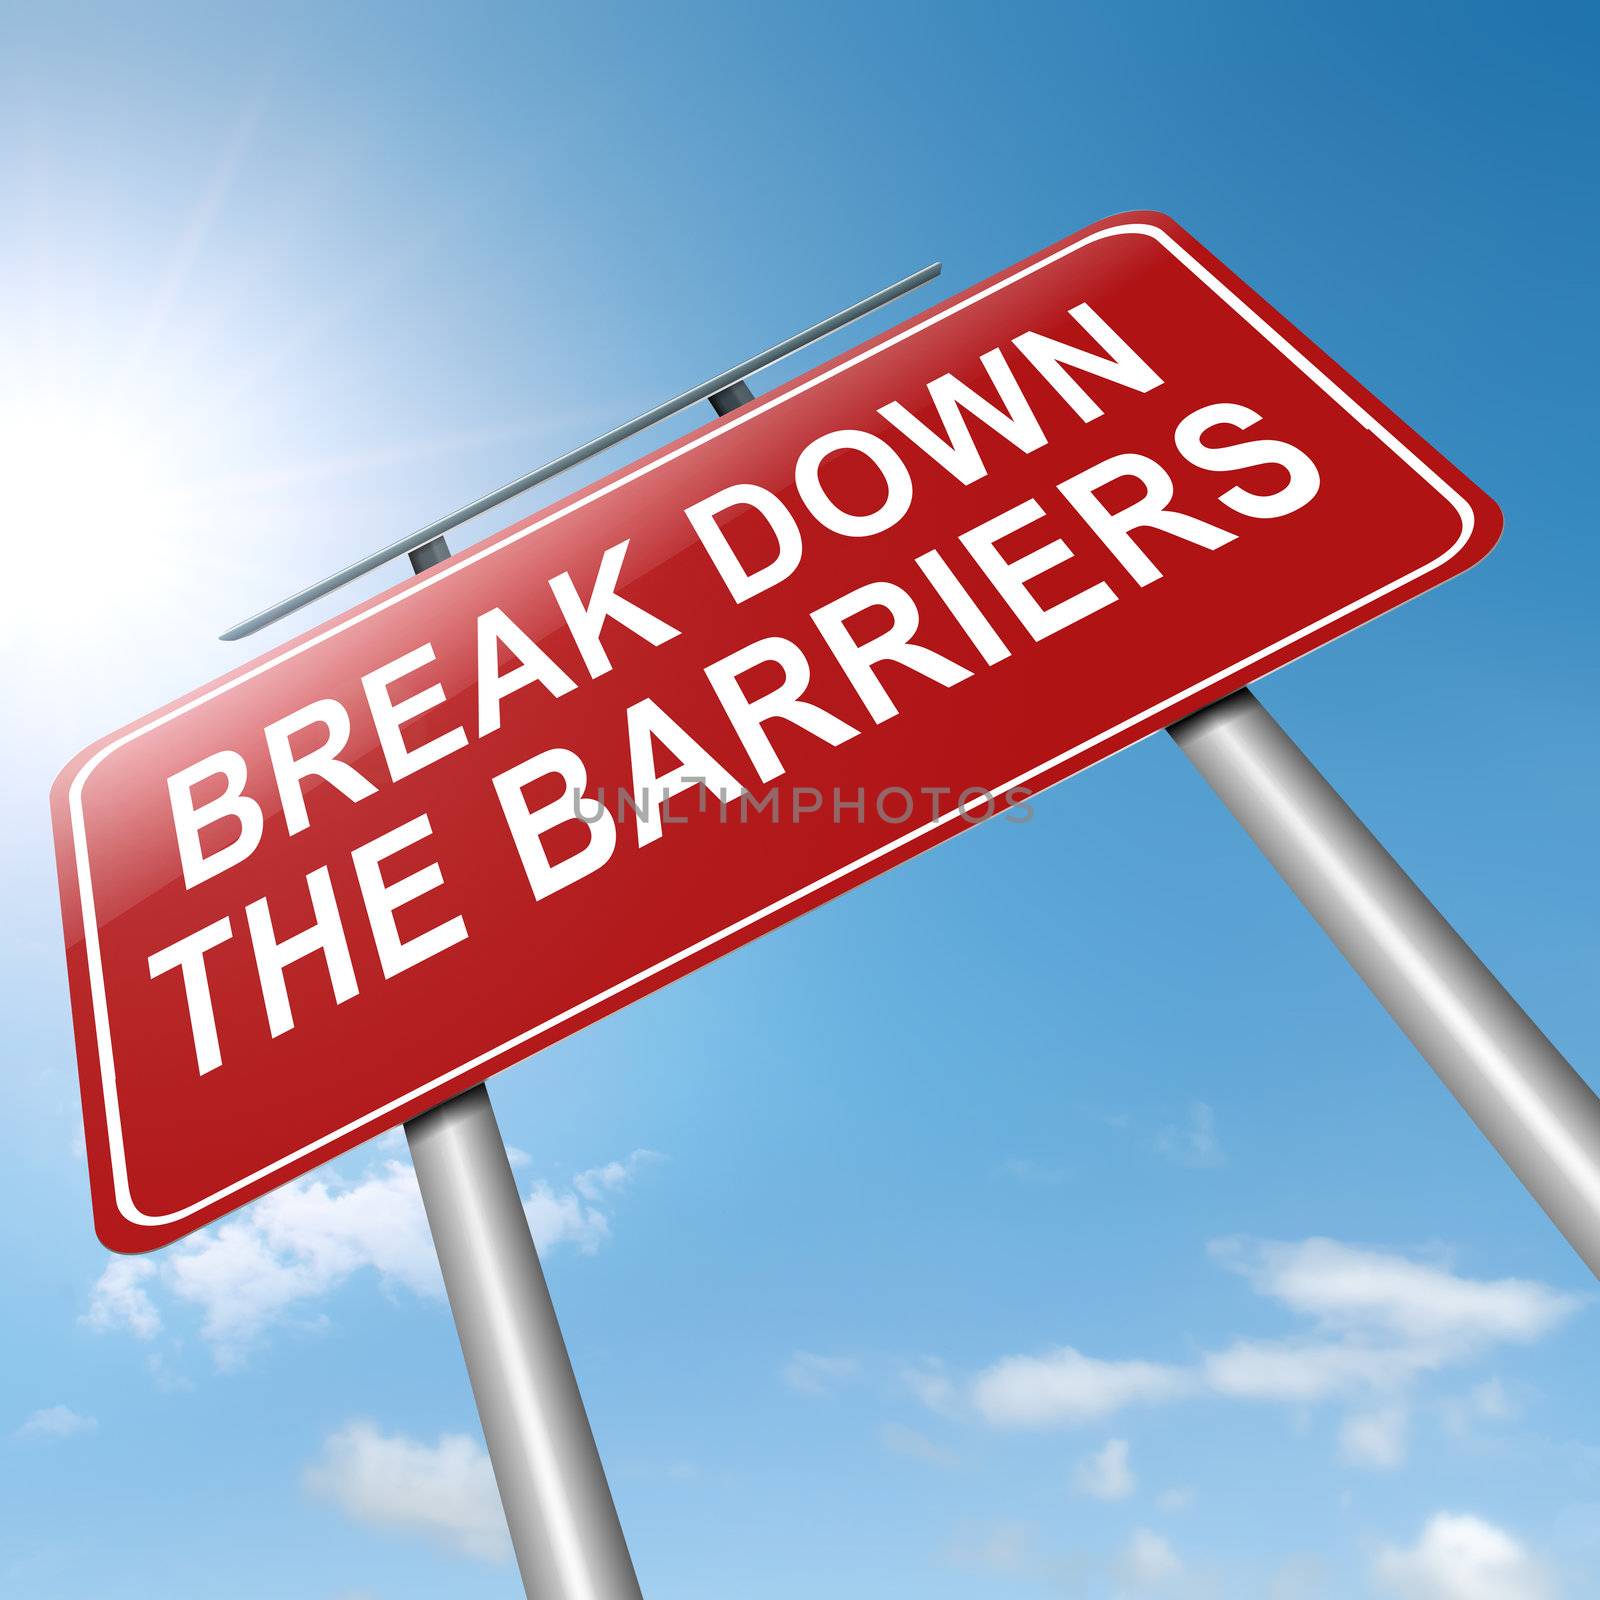 Break down the barriers. by 72soul